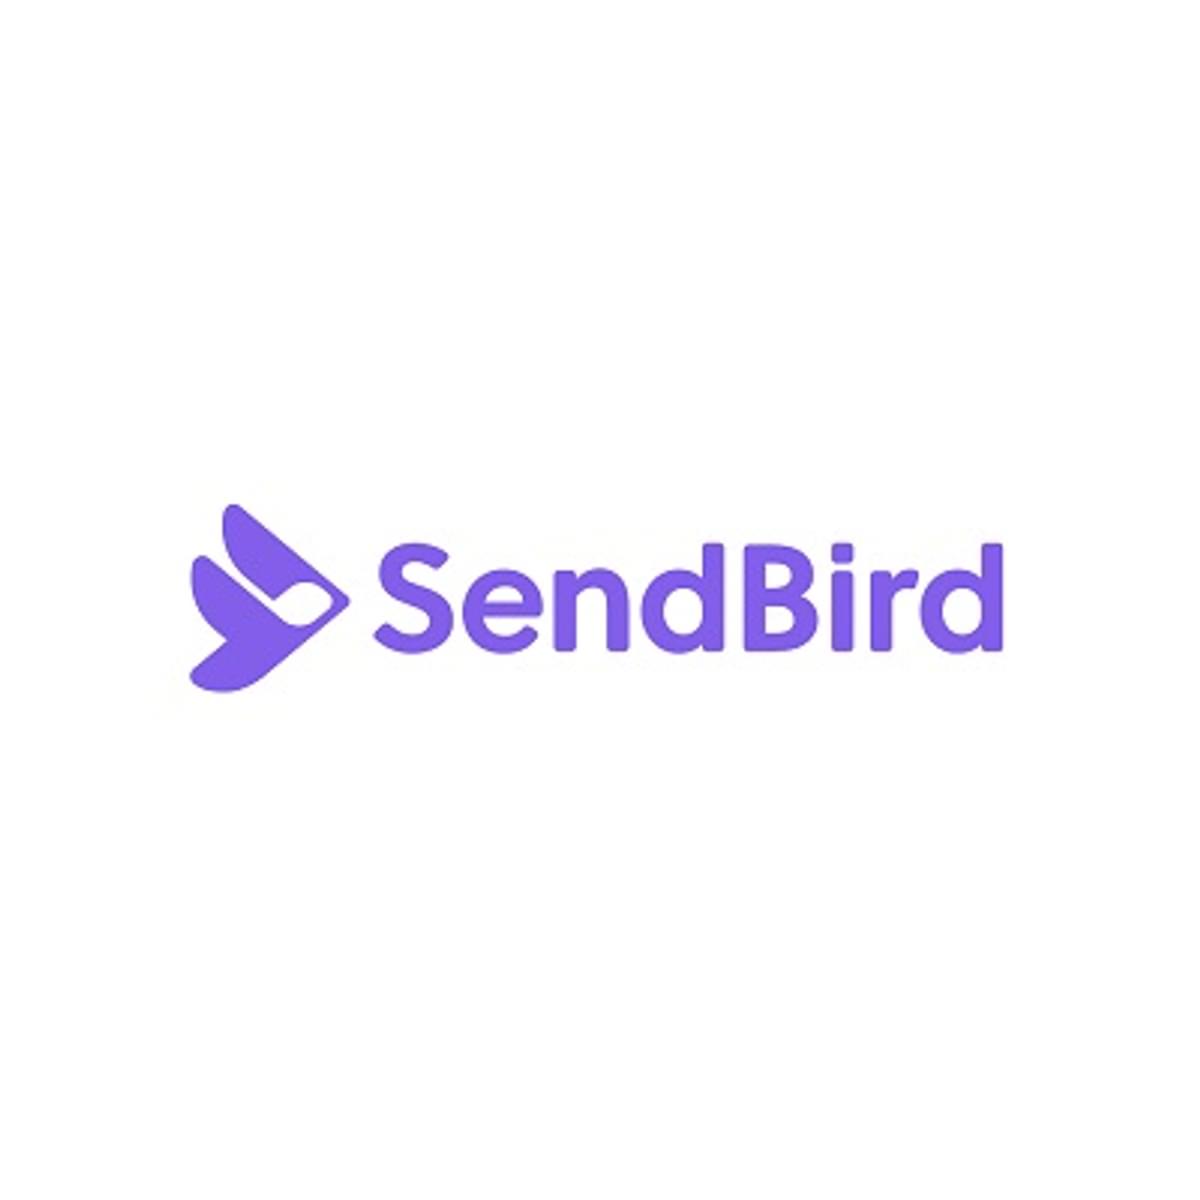 Chatplatform SendBird haalt 102 miljoen dollar op image